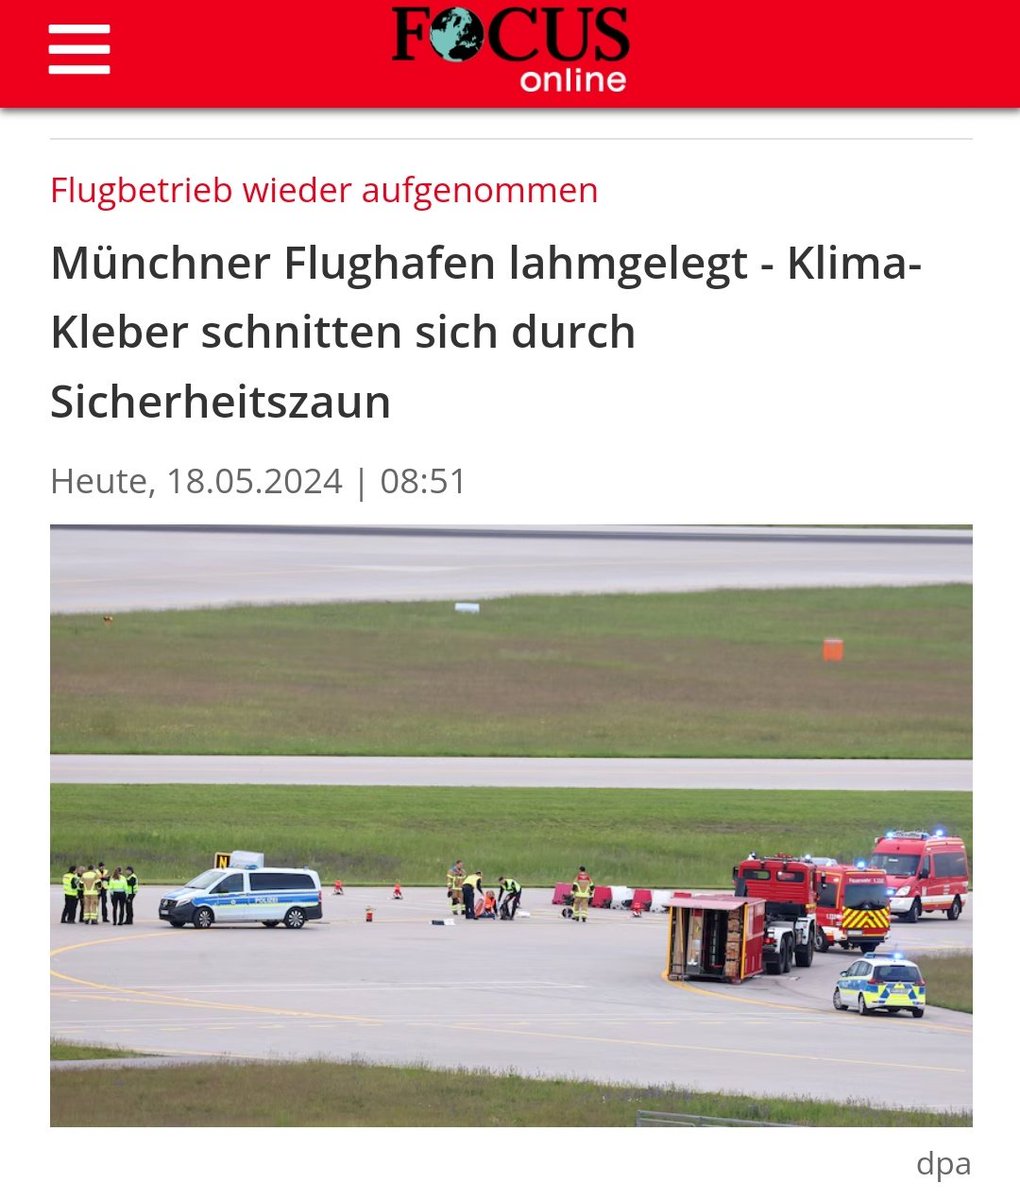 Klima-Kleber legen Münchner Flughafen lahm. Eine klare kriminelle Handlung. Die #LetzteGeneration steht übrigens bei der Europawahl auf dem Stimmzettel. Warum wird hier kein Parteiverbot gefordert?🤔